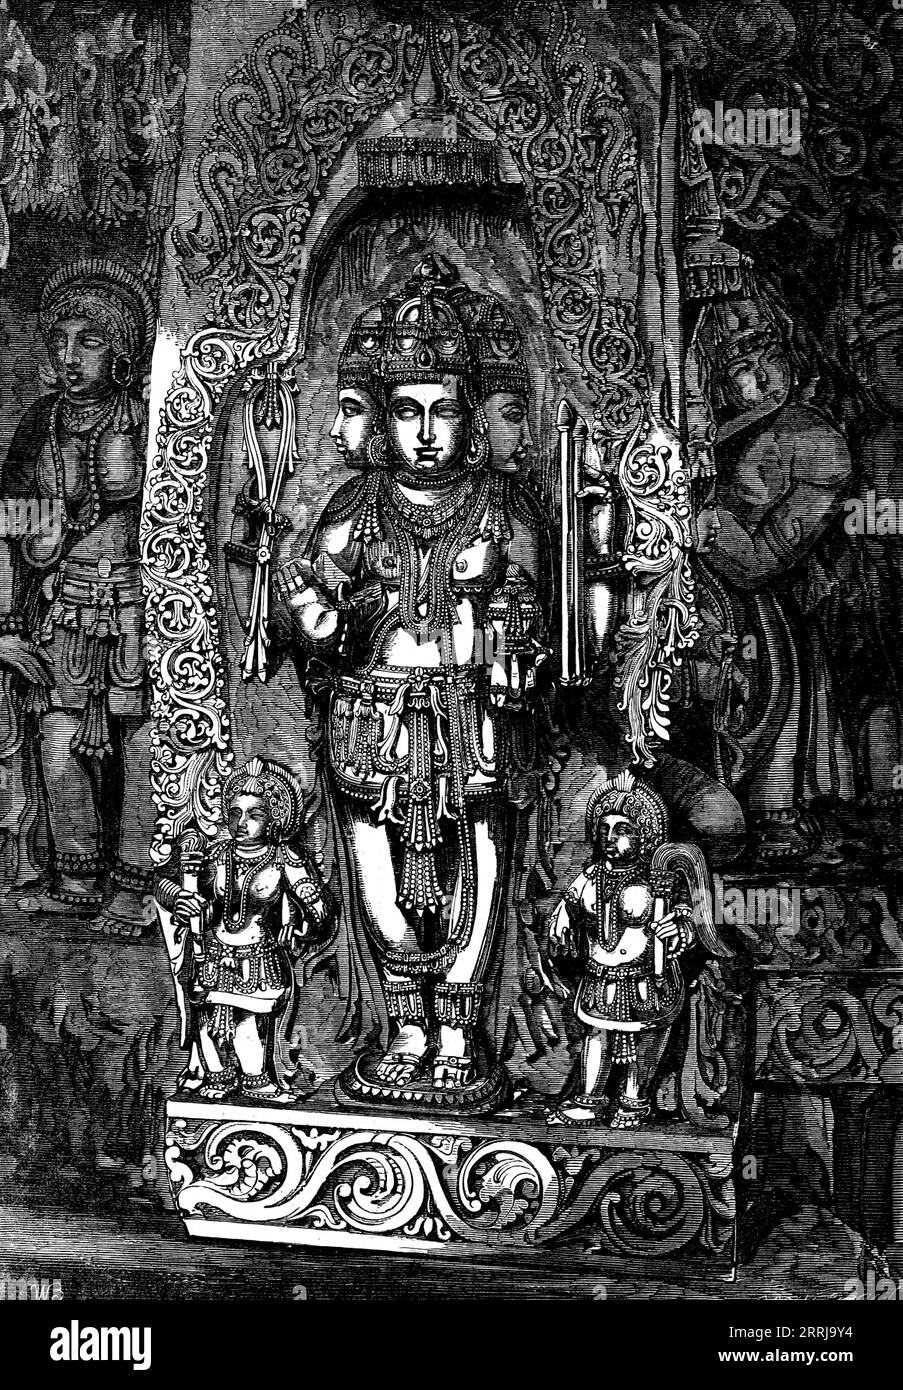 Indische Gottheiten - Trimurti; die Hindoo-Triade oder Dreiheit, 1858. Die zentrale Figur ist Brahma; rechts ist Siva; links ist Vishnu. Brahma, der Schöpfer; Vishnu, der Bewahrer; Siva, der Zerstörer - drei in einem - entstammte, nach Hindoo-Mythologie, Brahm, dem Allmächtigen, dem Einen Supremen Wesen, der vor allem existierte. Die Lehre der Dreifaltigkeit durchdringt alle Religionen. Sie findet sich in den drei Prinzipien der chaldäischen Theologie, im Triplasios Mithra von Persien, im Numen Triplix von Japan, in der Inschrift auf der Medaille in den Wüsten Sibiriens, „To the Triune Go Stockfoto